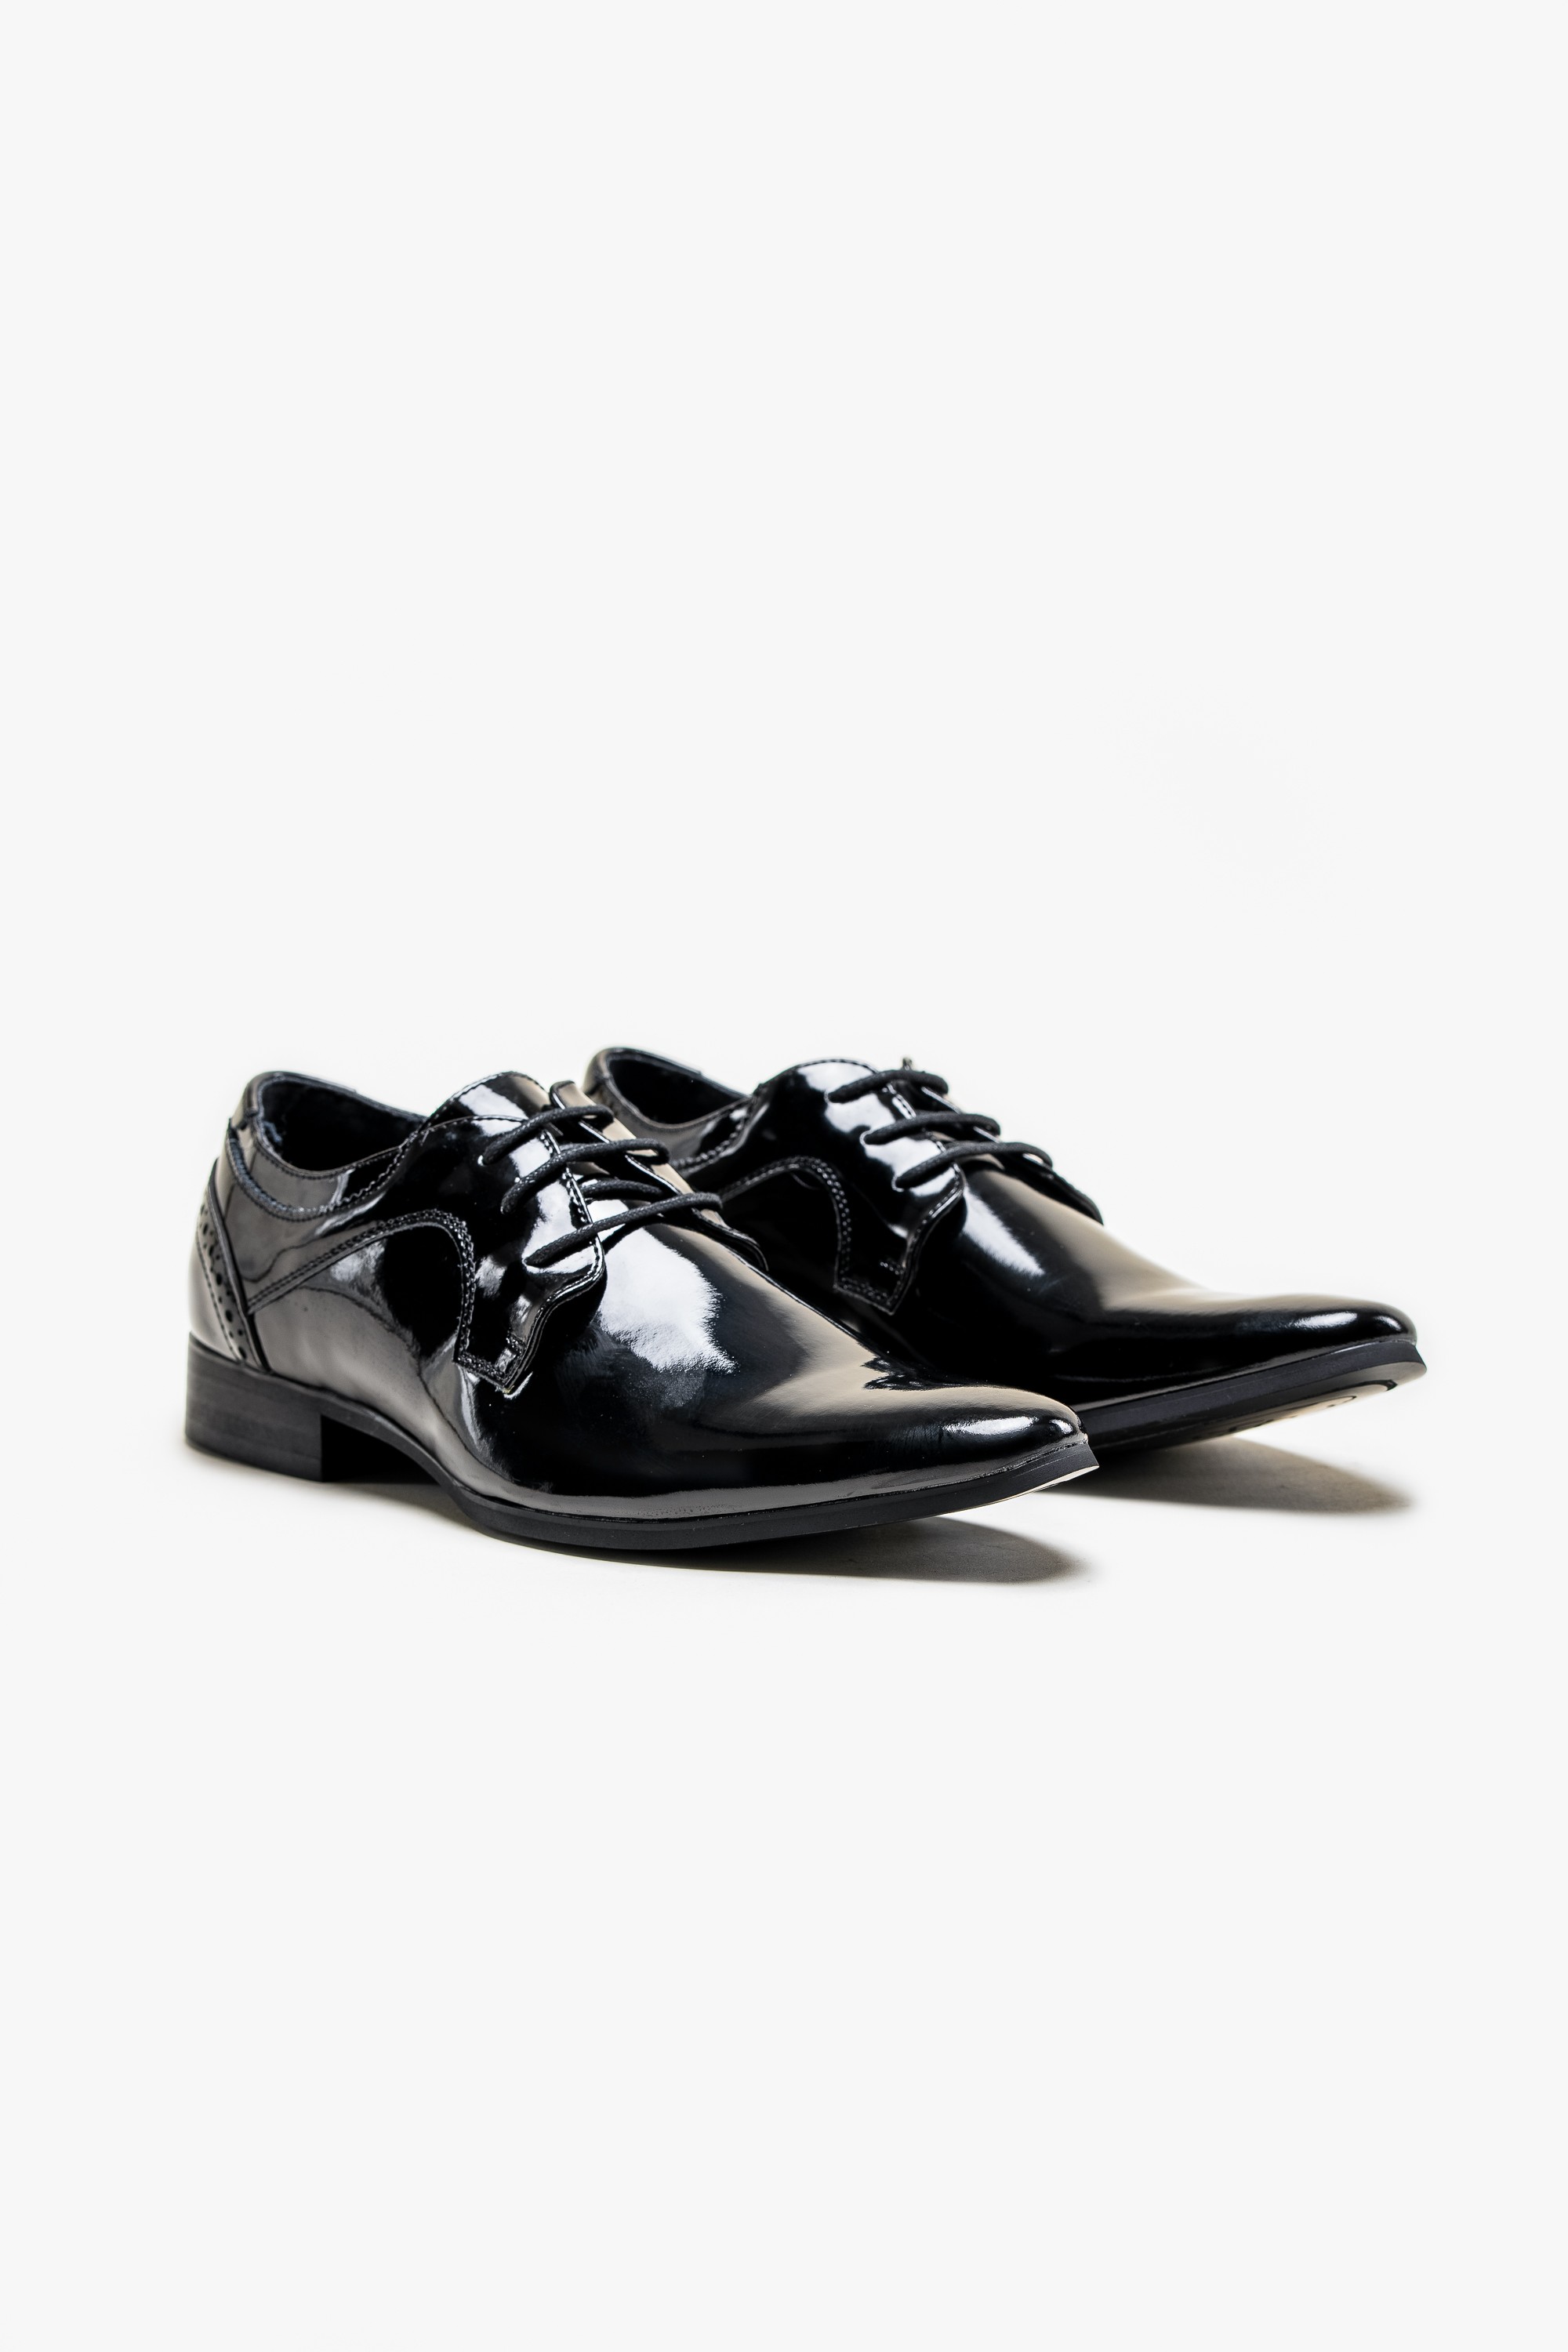 Men's Patent Lace up Tuxedo Shoes - SCOTT Black - Black